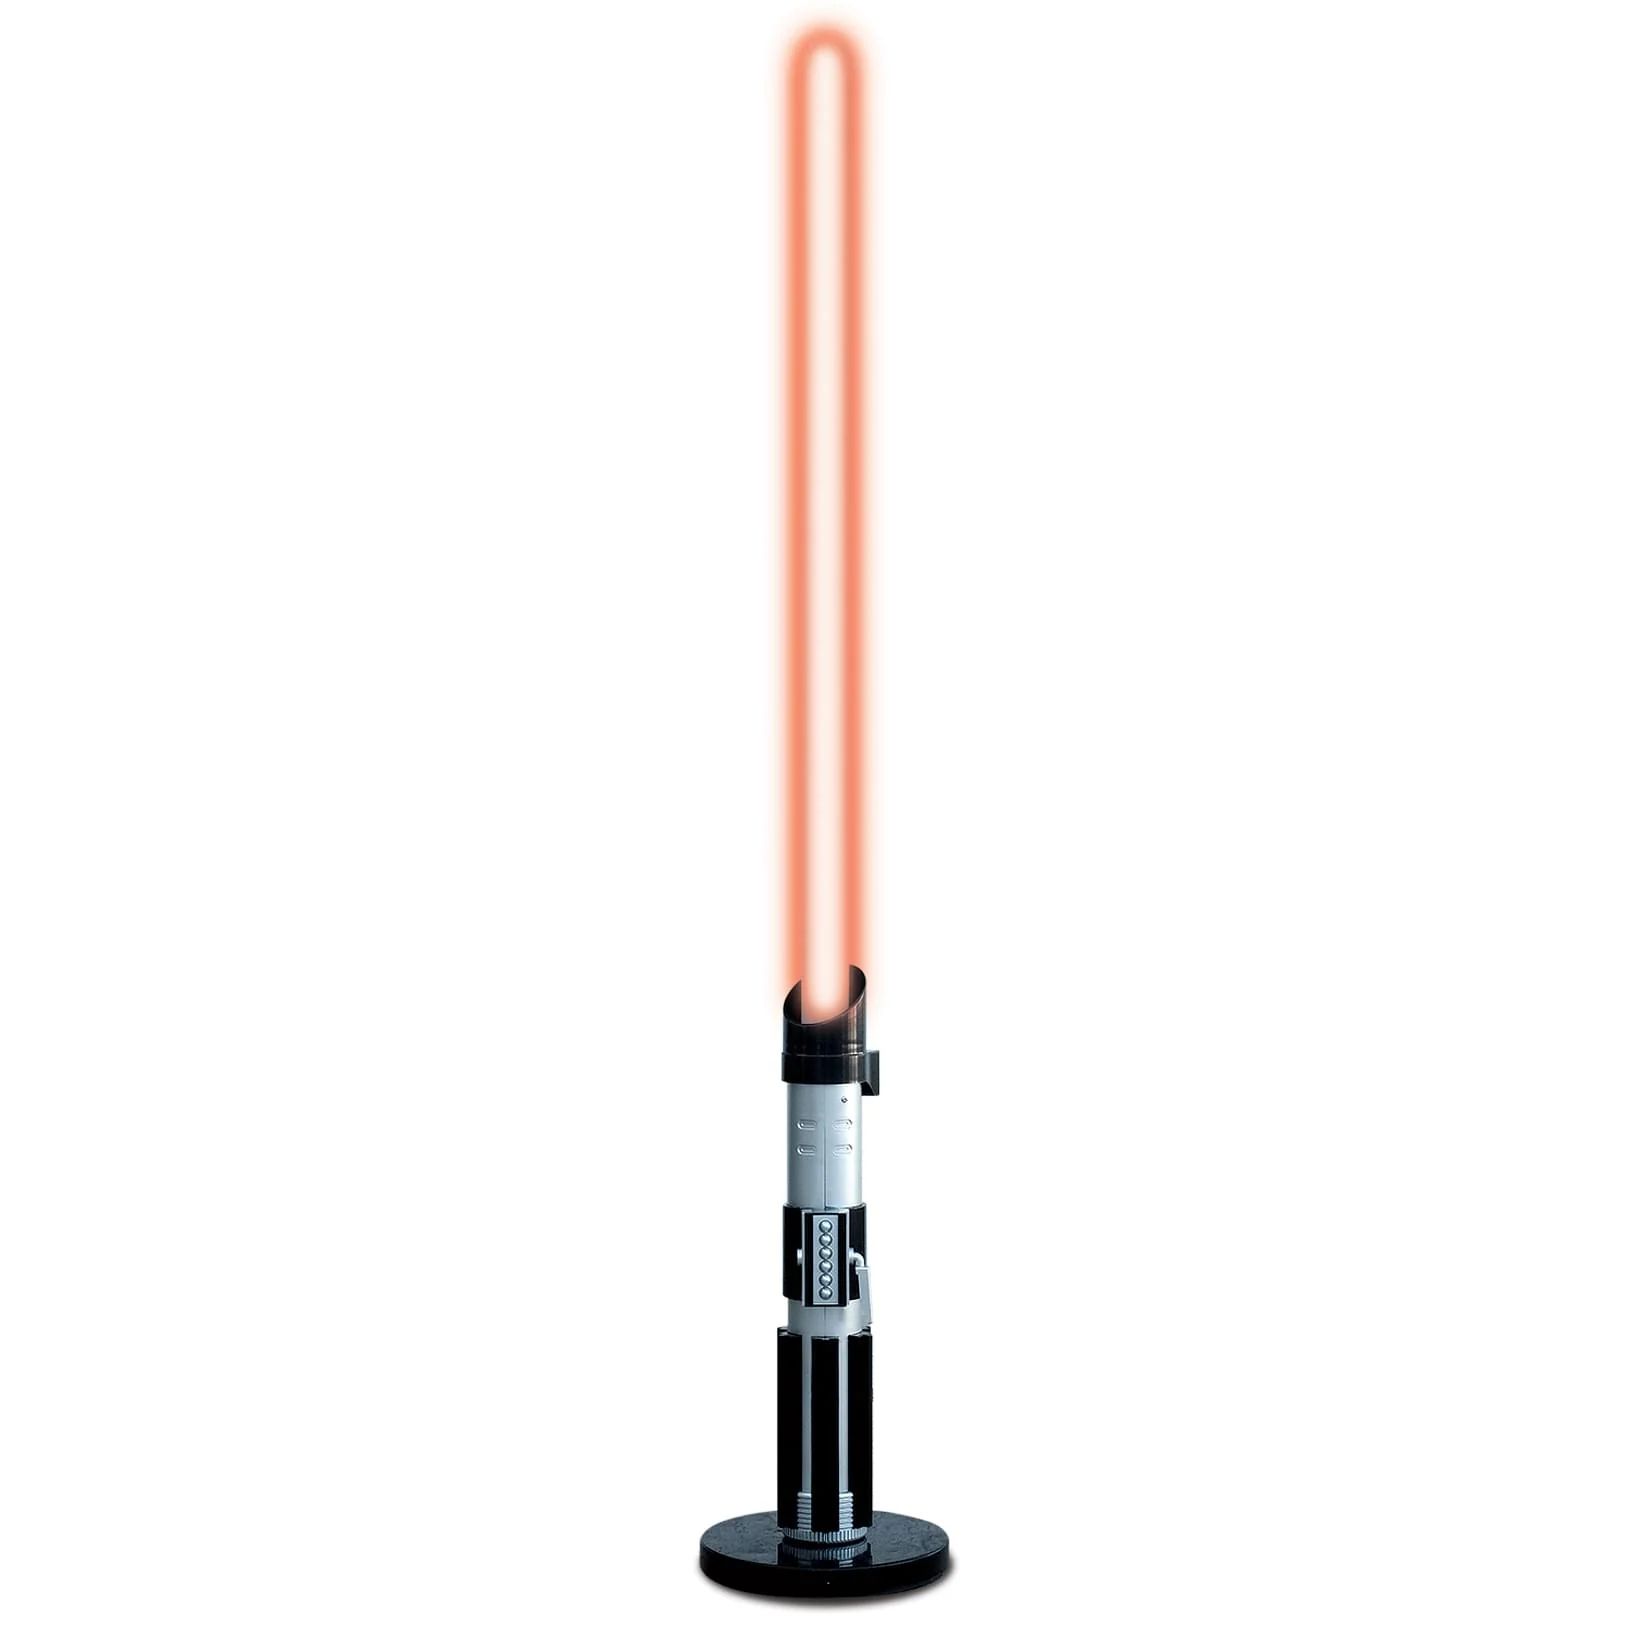 Star Wars Darth Vader Lightsaber Standing Lamp | 5 Feet Tall | Toynk